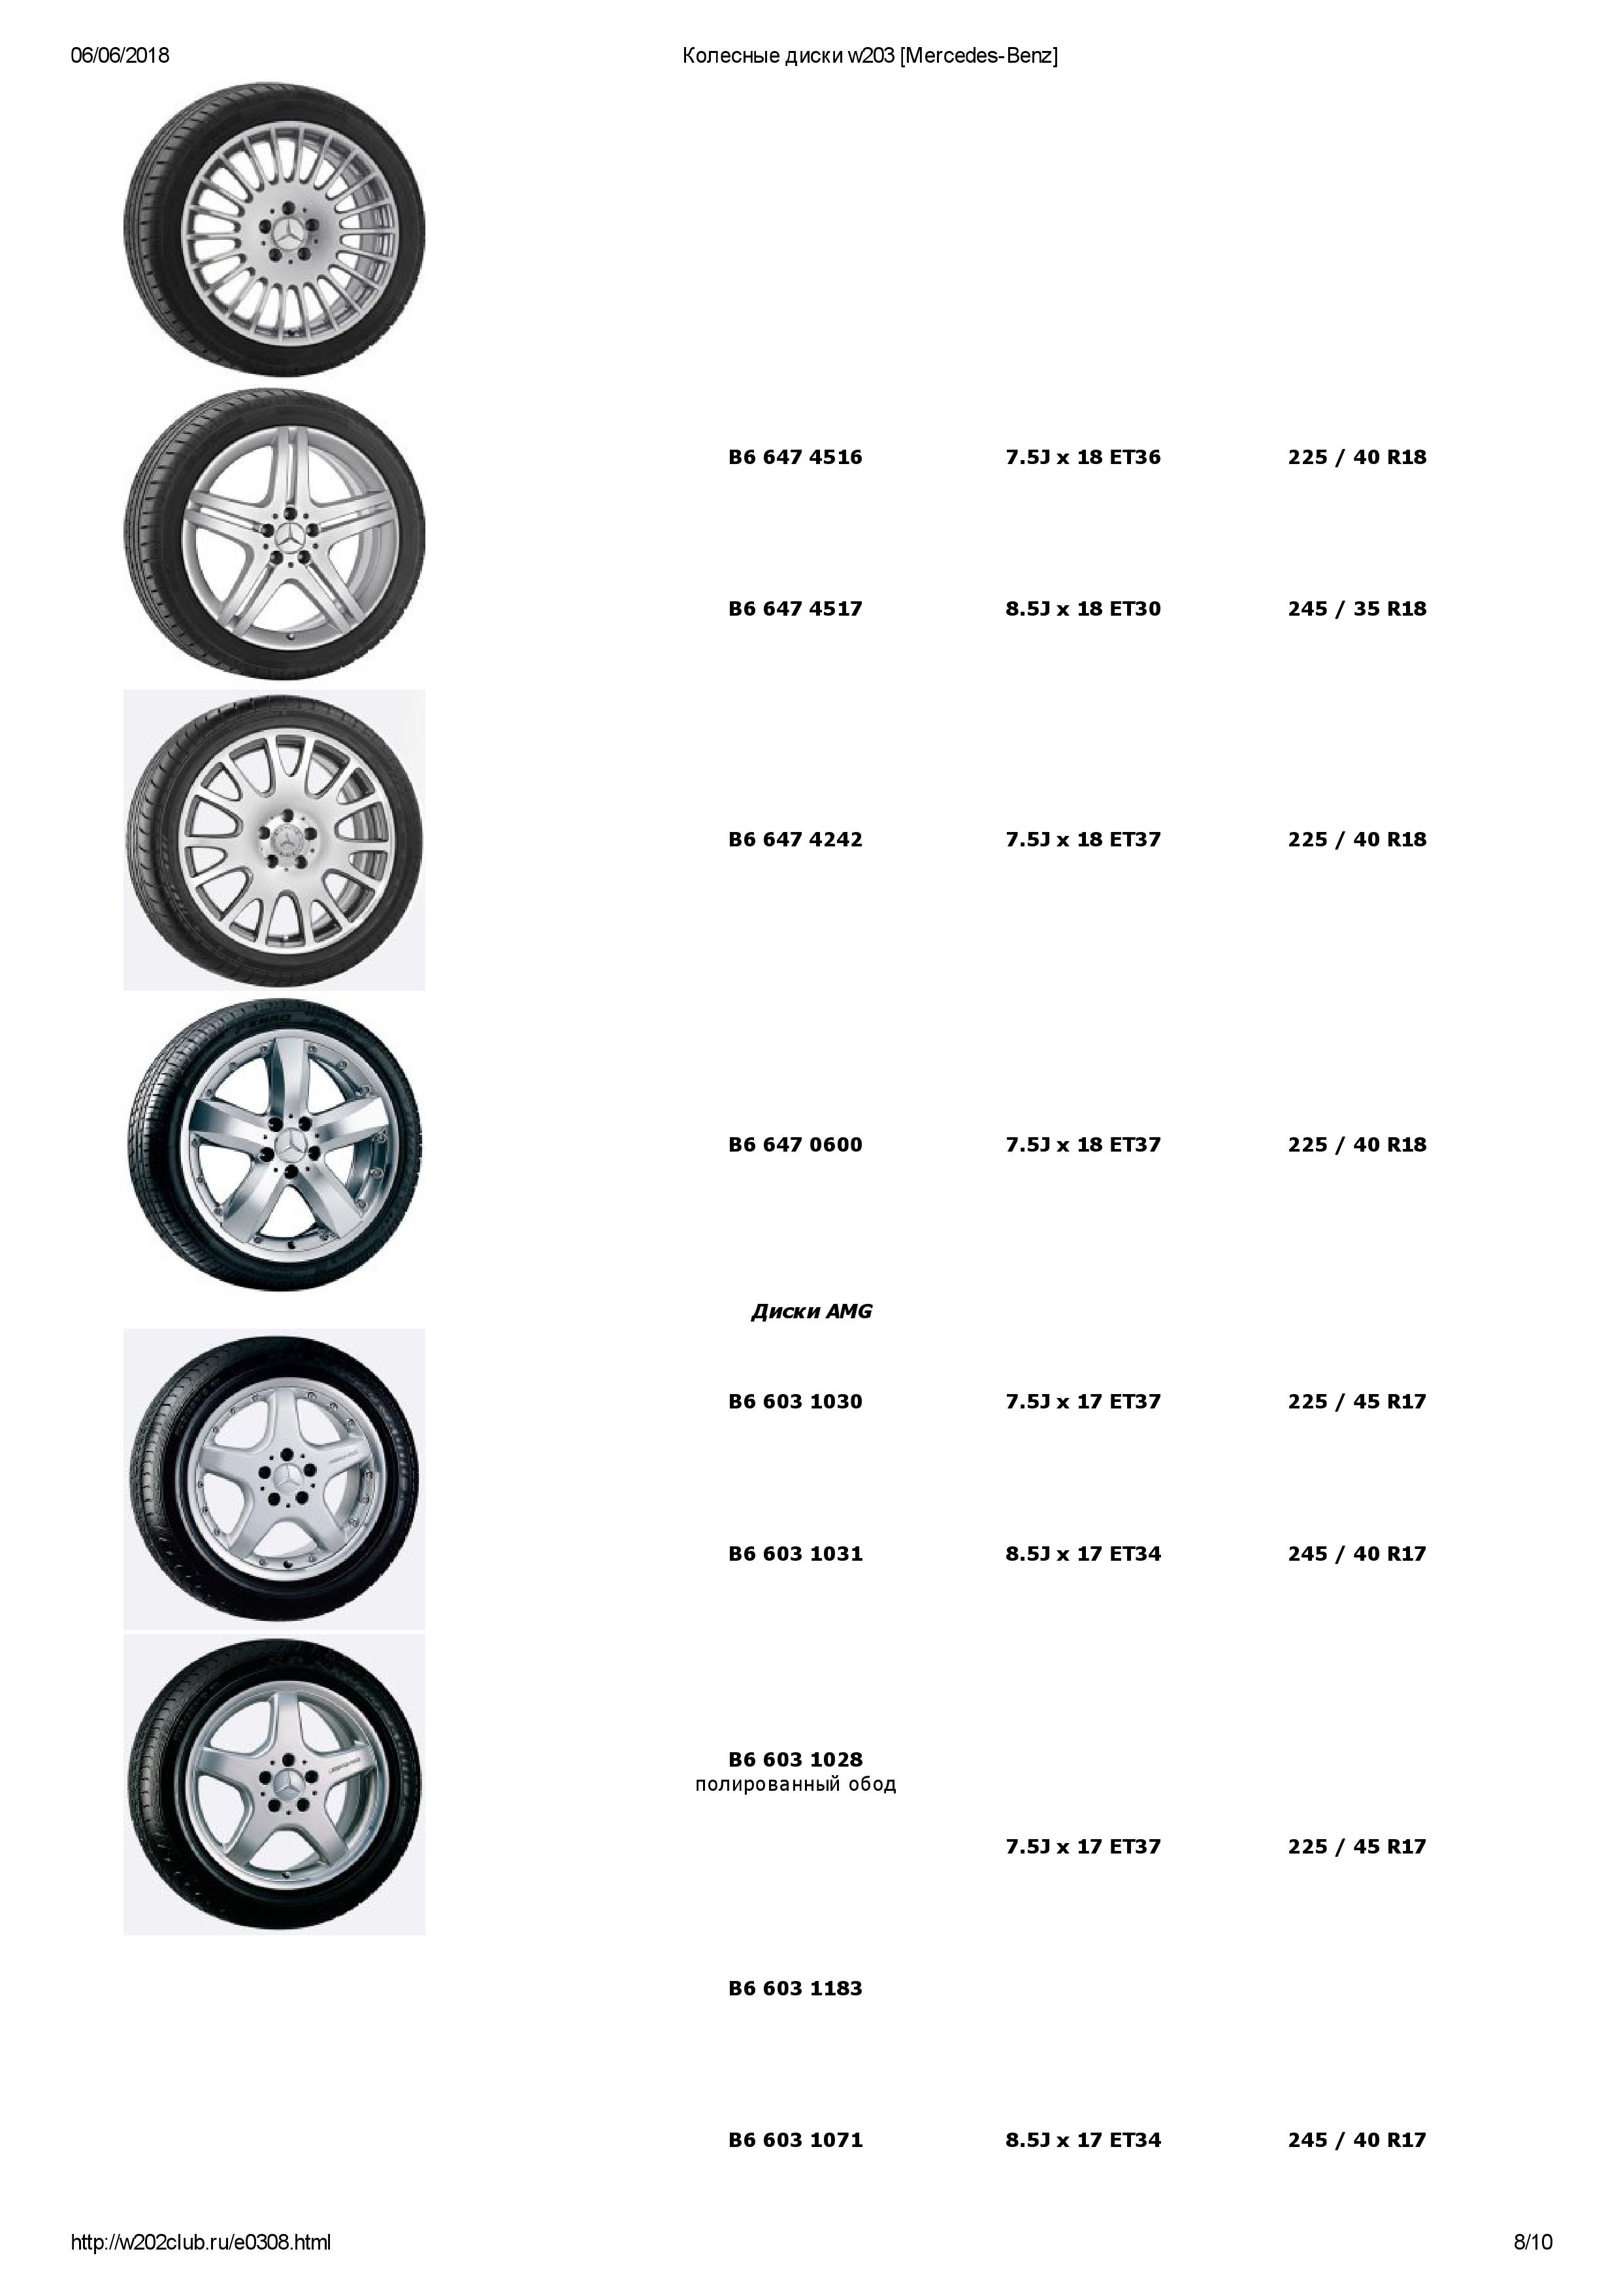 (S/W203): Medidas oficiais das rodas e pneus 0008_210